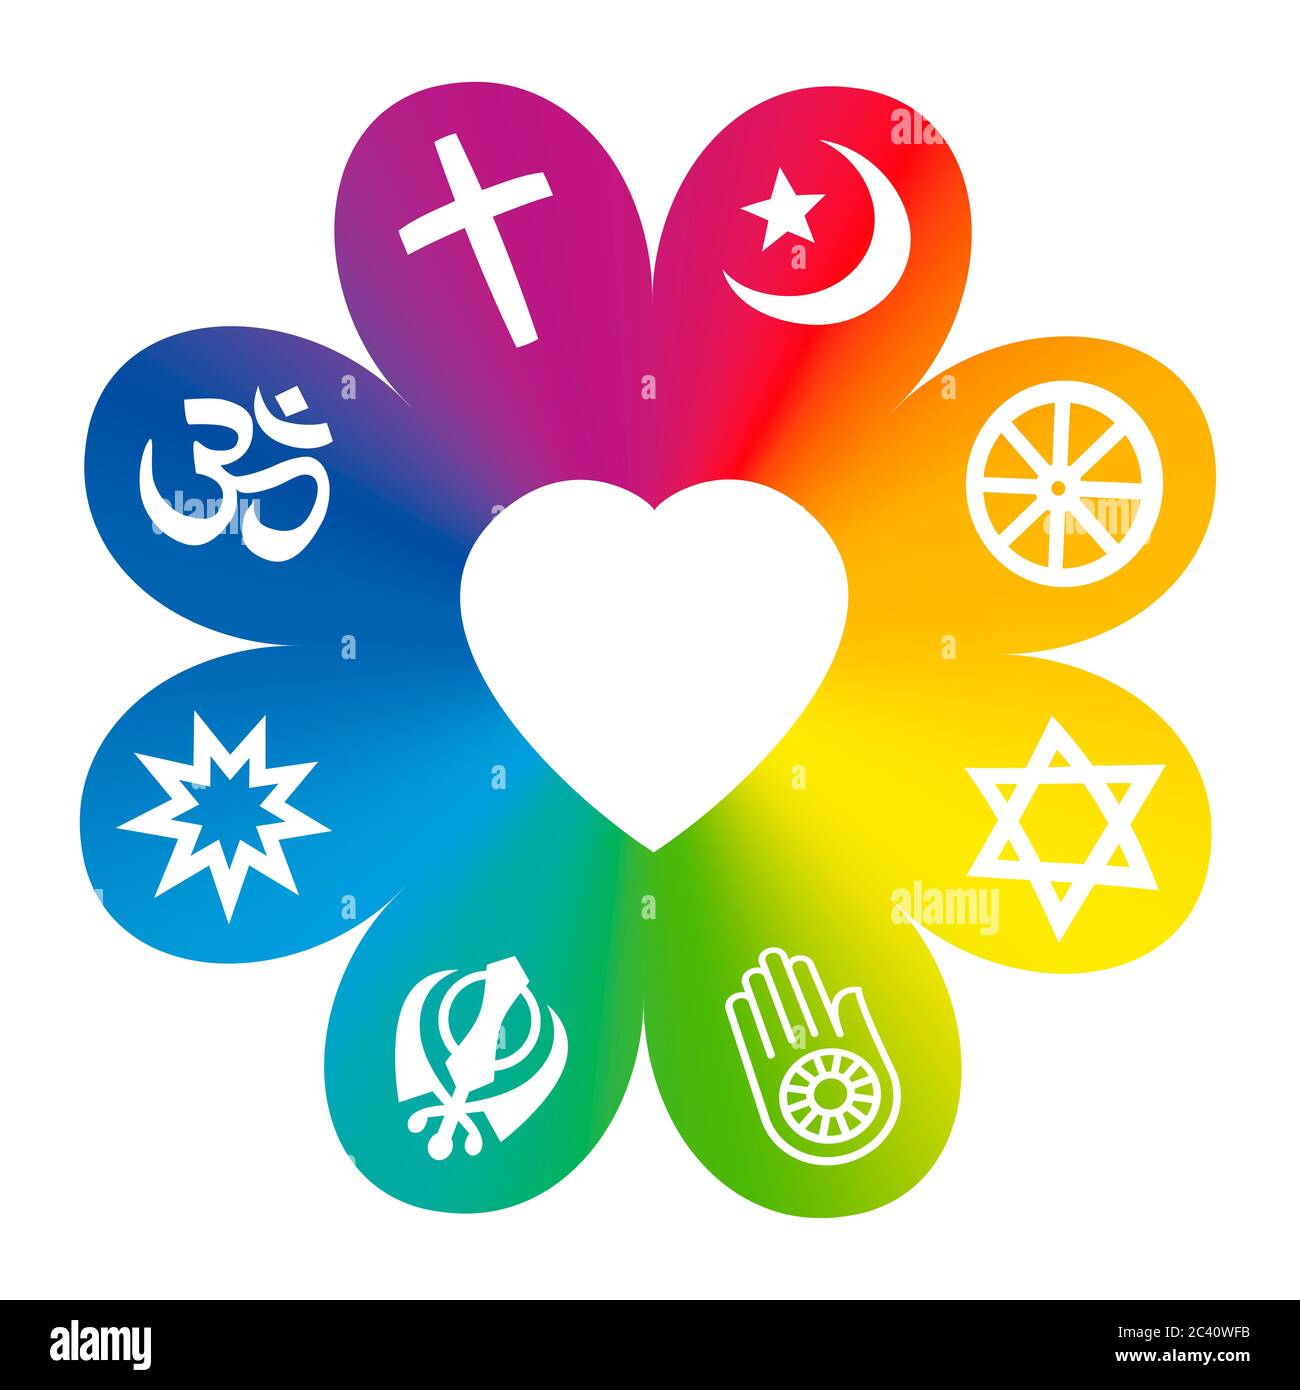 Religioni del mondo. Simboli su un fiore arcobaleno colorato con un cuore al centro come simbolo di unità religiosa o di comunanza. Foto Stock